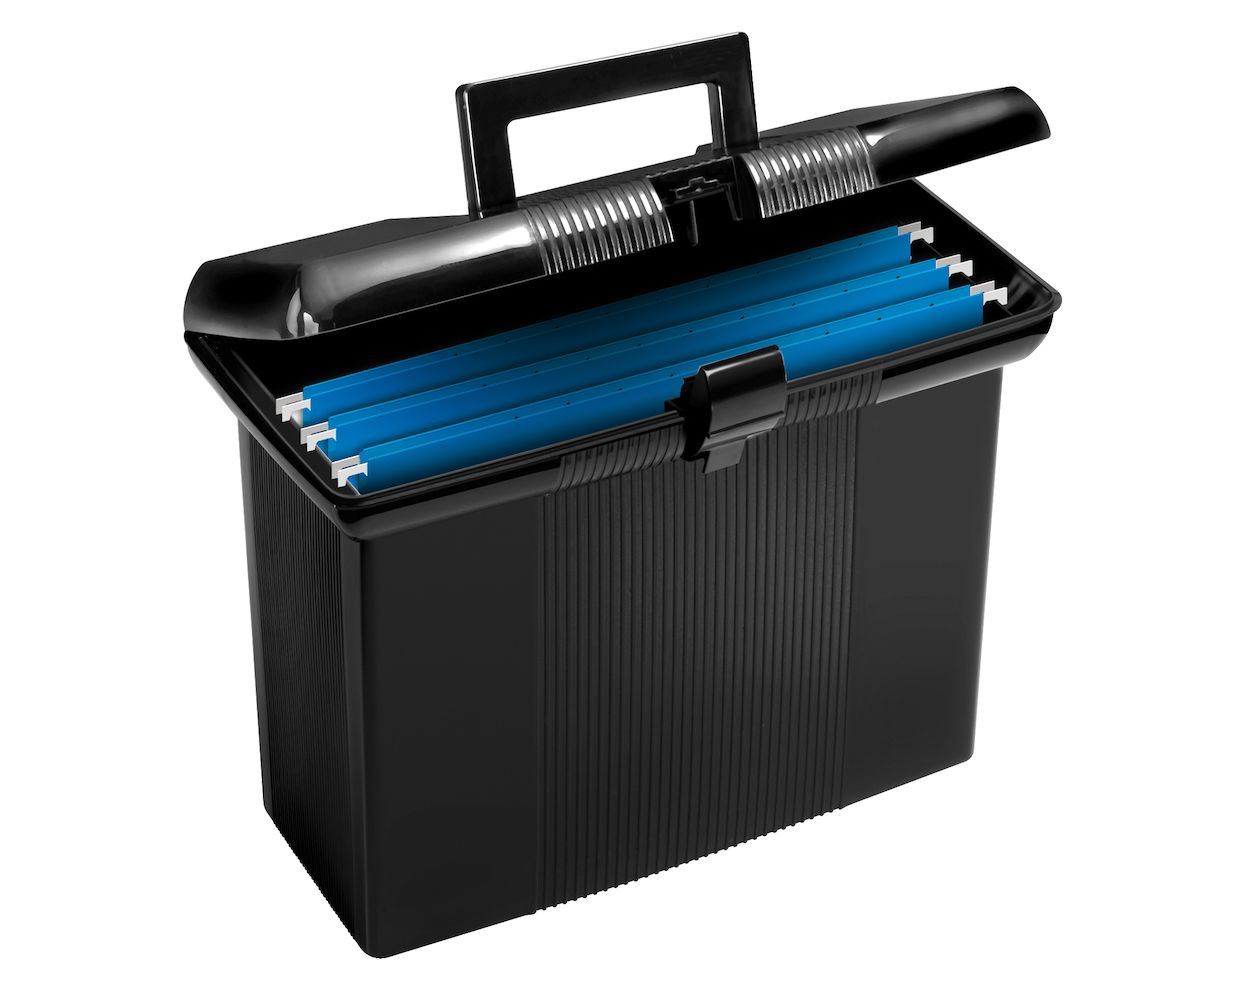 Pendaflex Portable File Box, Black, 11" H x 14" W x 6-1/2" D